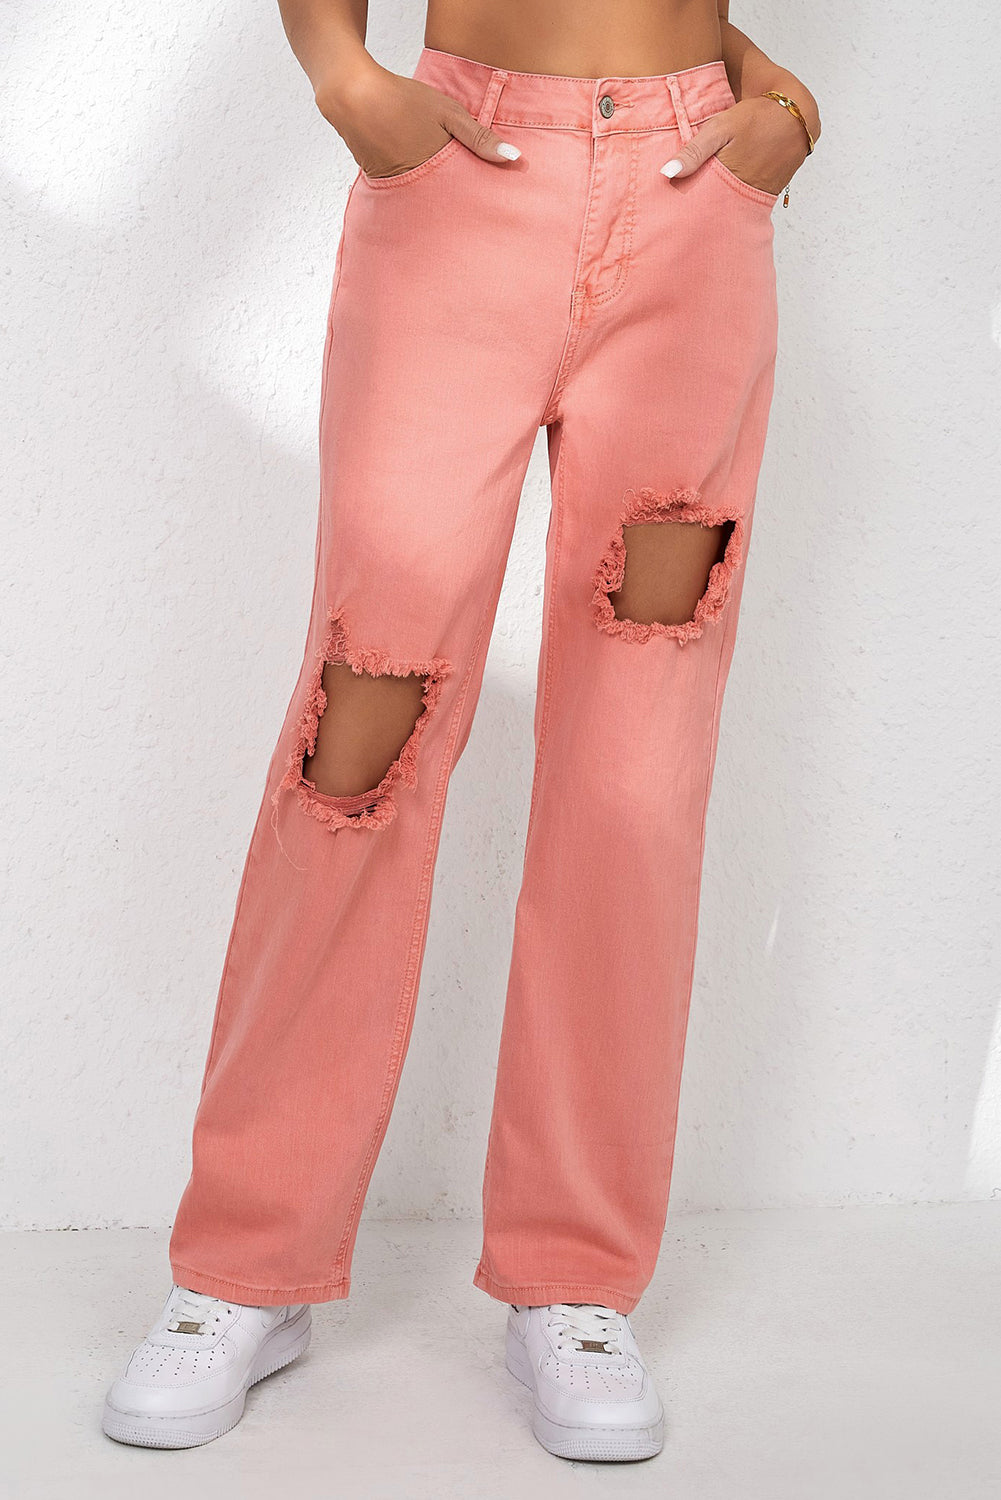 Rosafarbene, zerrissene Jeans mit geradem Bein und Taschen und hoher Taille